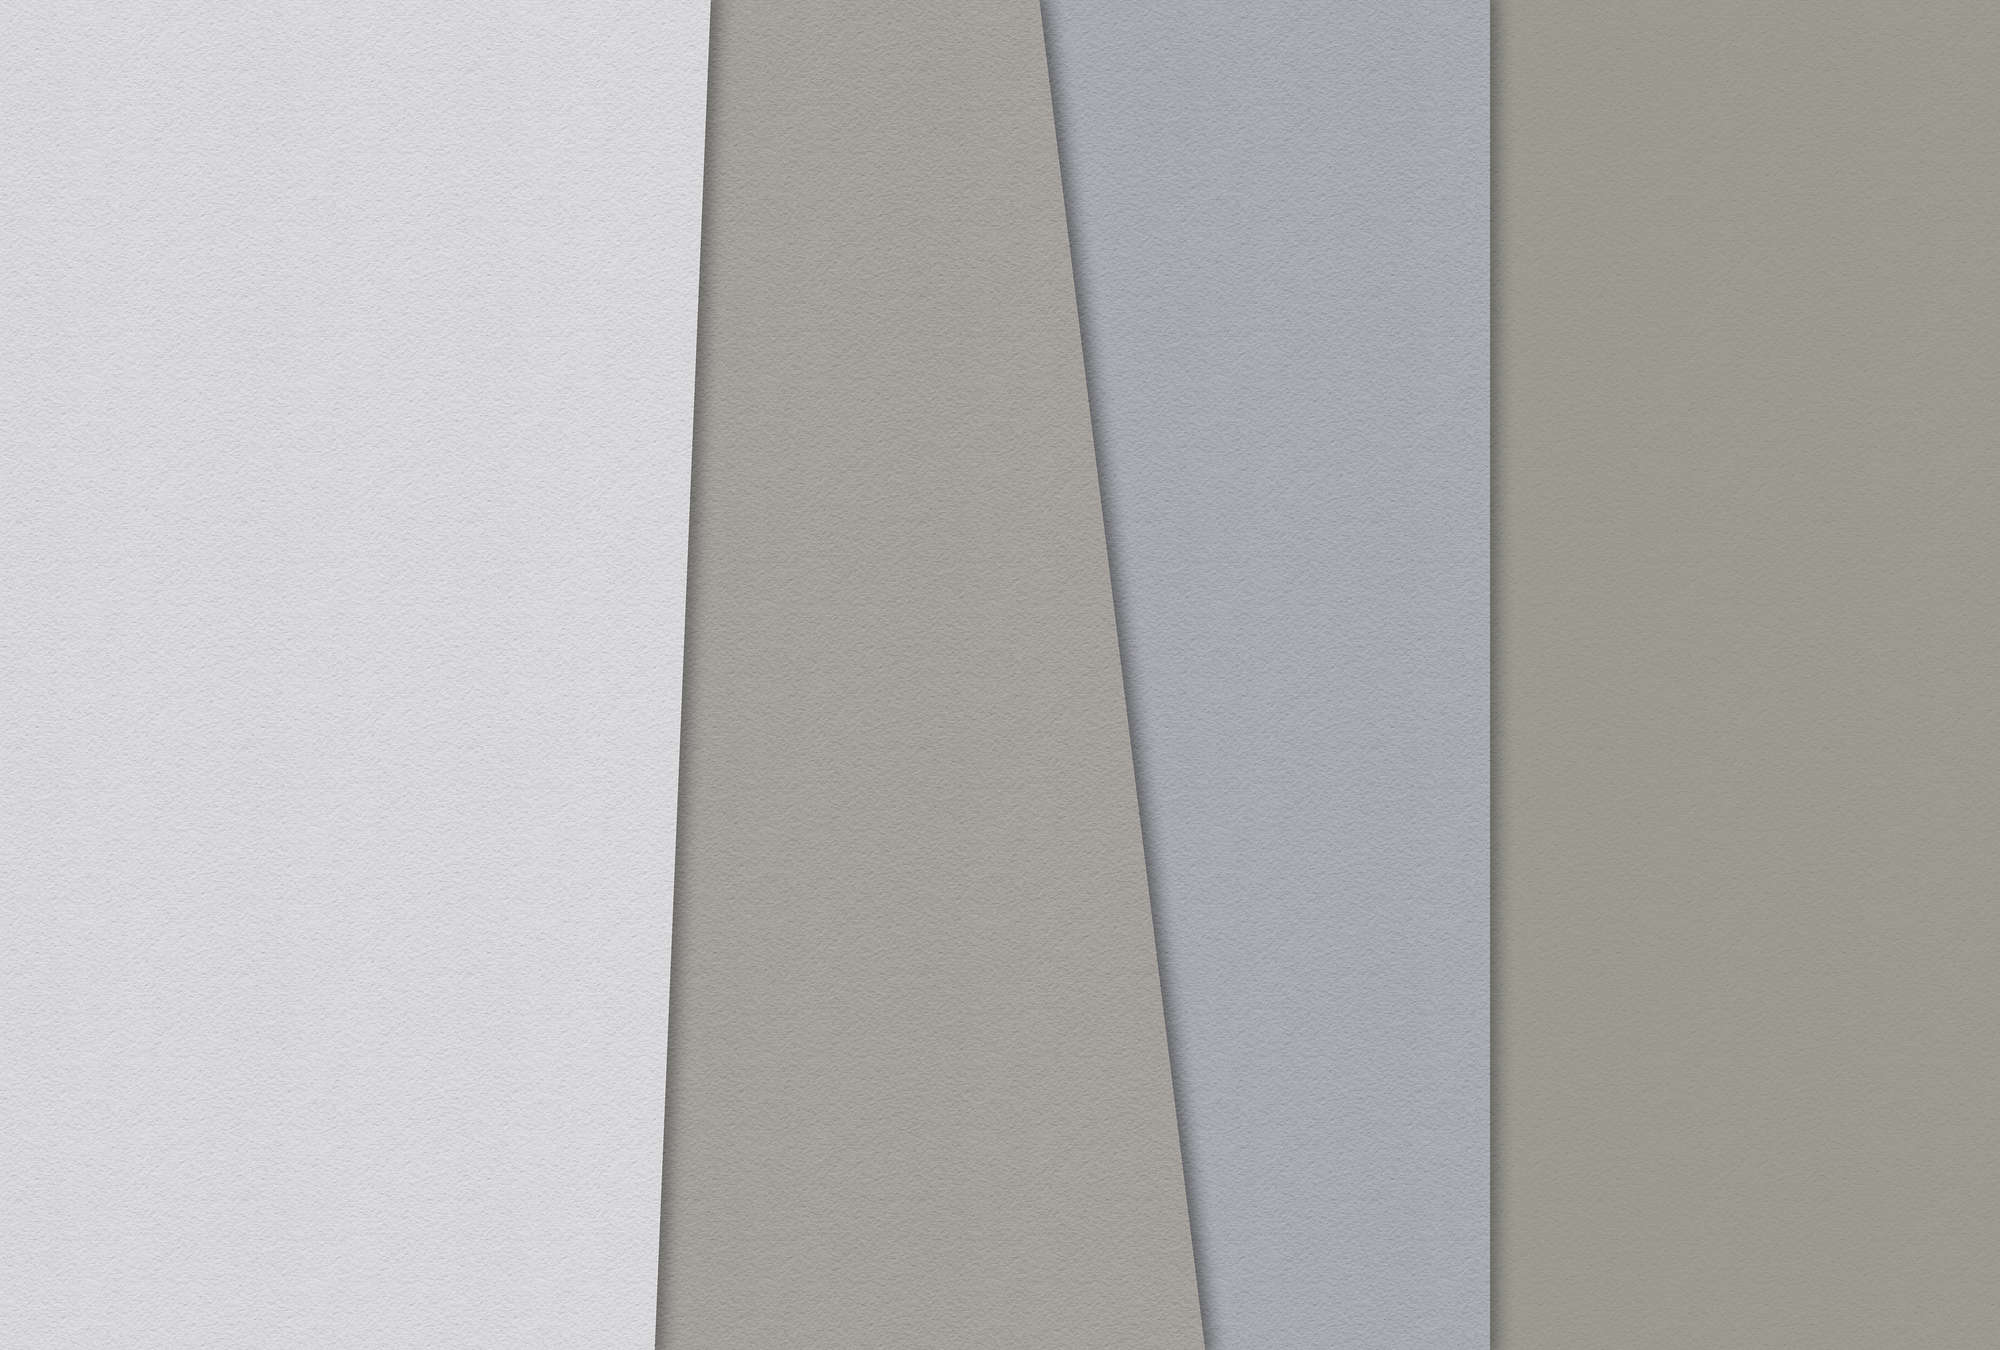             Layered paper 4 - Fototapete Farbflächen Minimalismus in Büttenpapier Struktur – Blau, Creme | Mattes Glattvlies
        